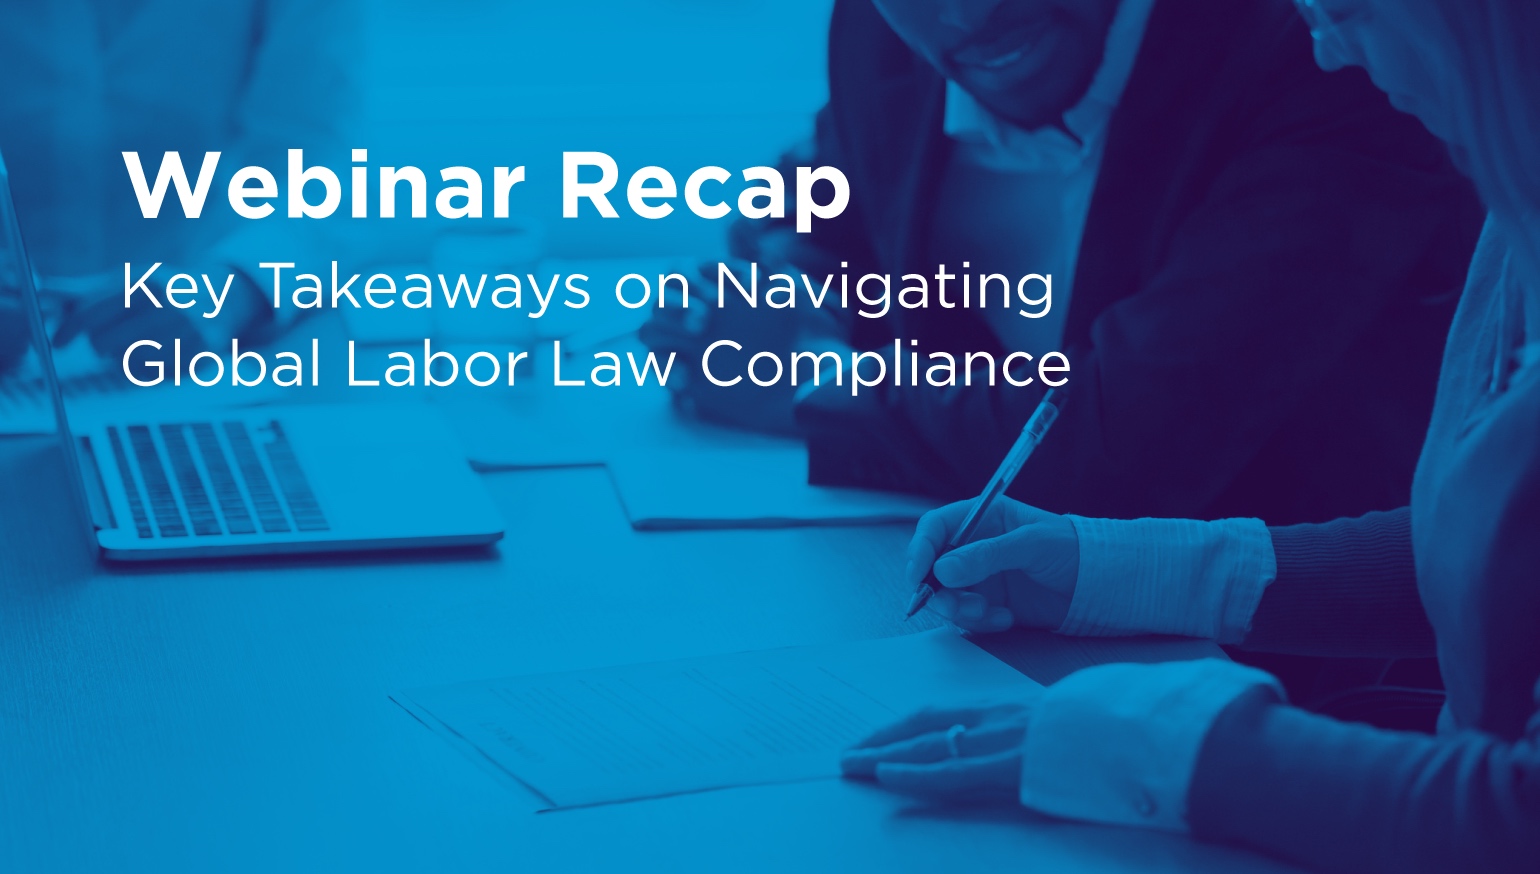 Webinar Recap: Key Takeaways on Navigating Global Labor Law Compliance